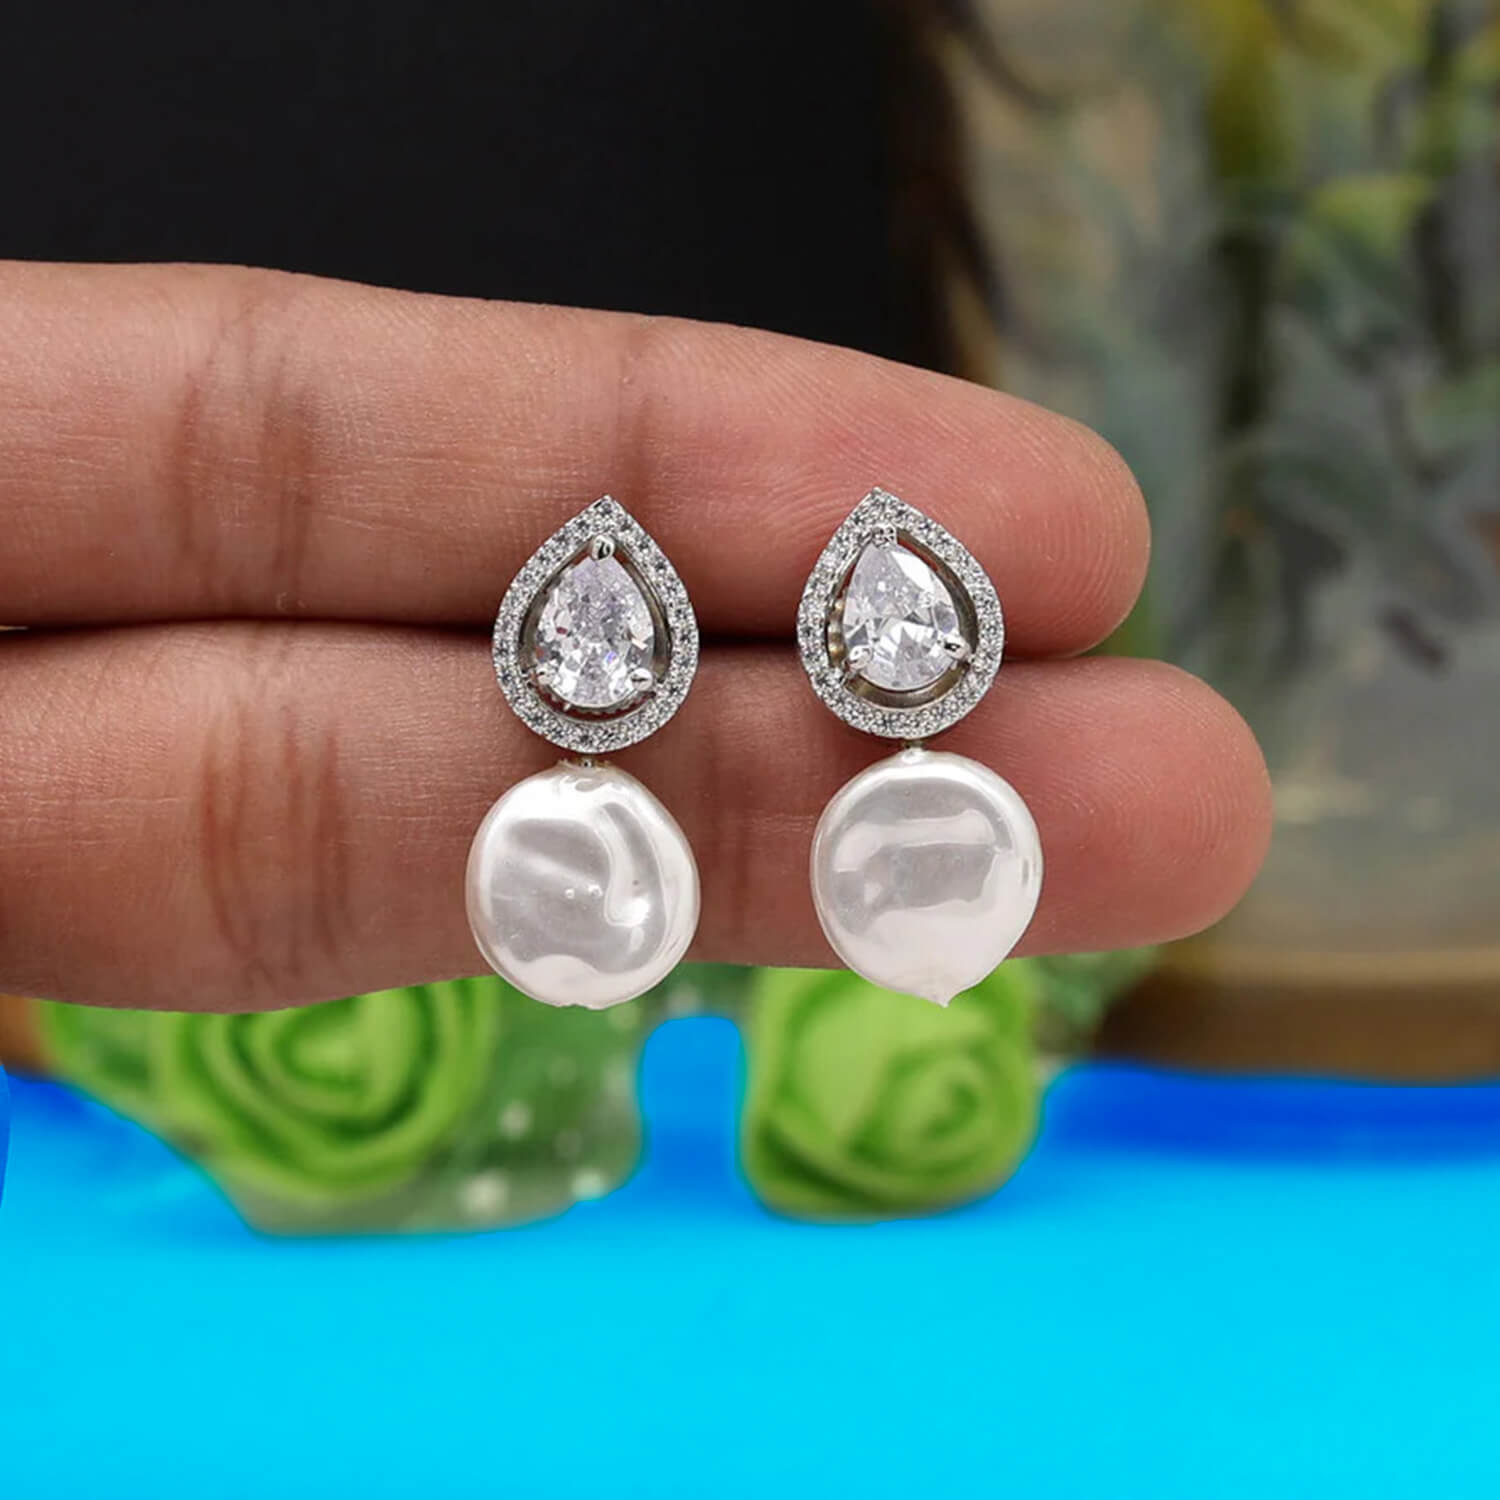 buy-yaaritas-silver-color-american-diamond-earrings